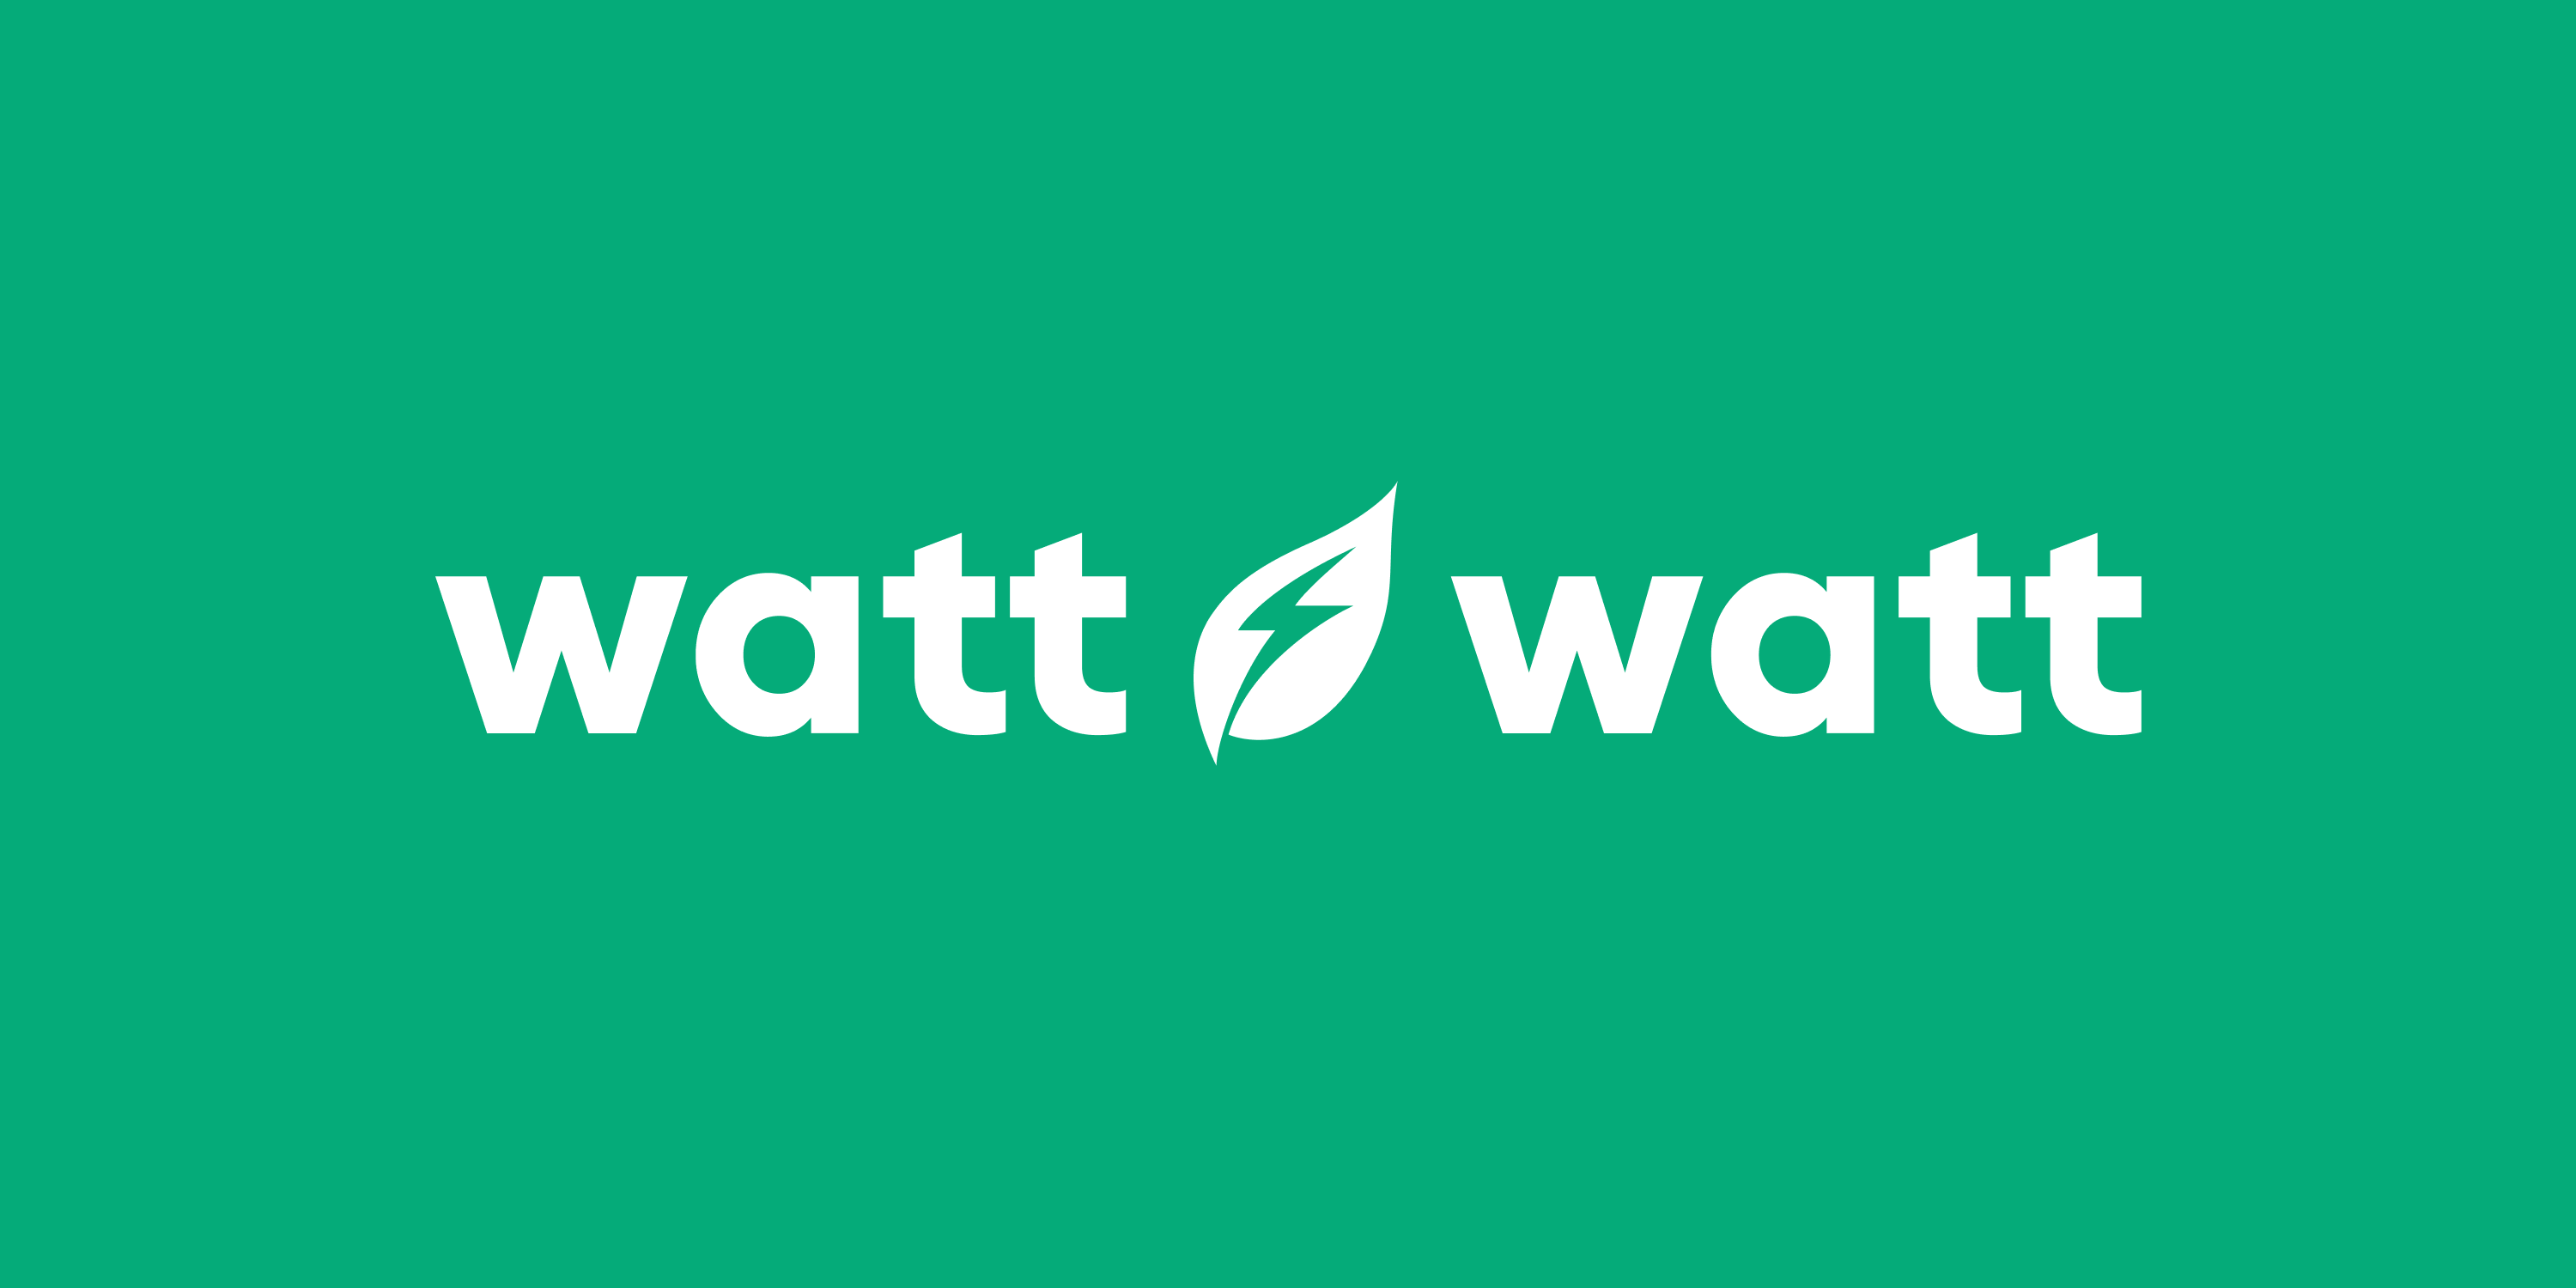 Watt Watt